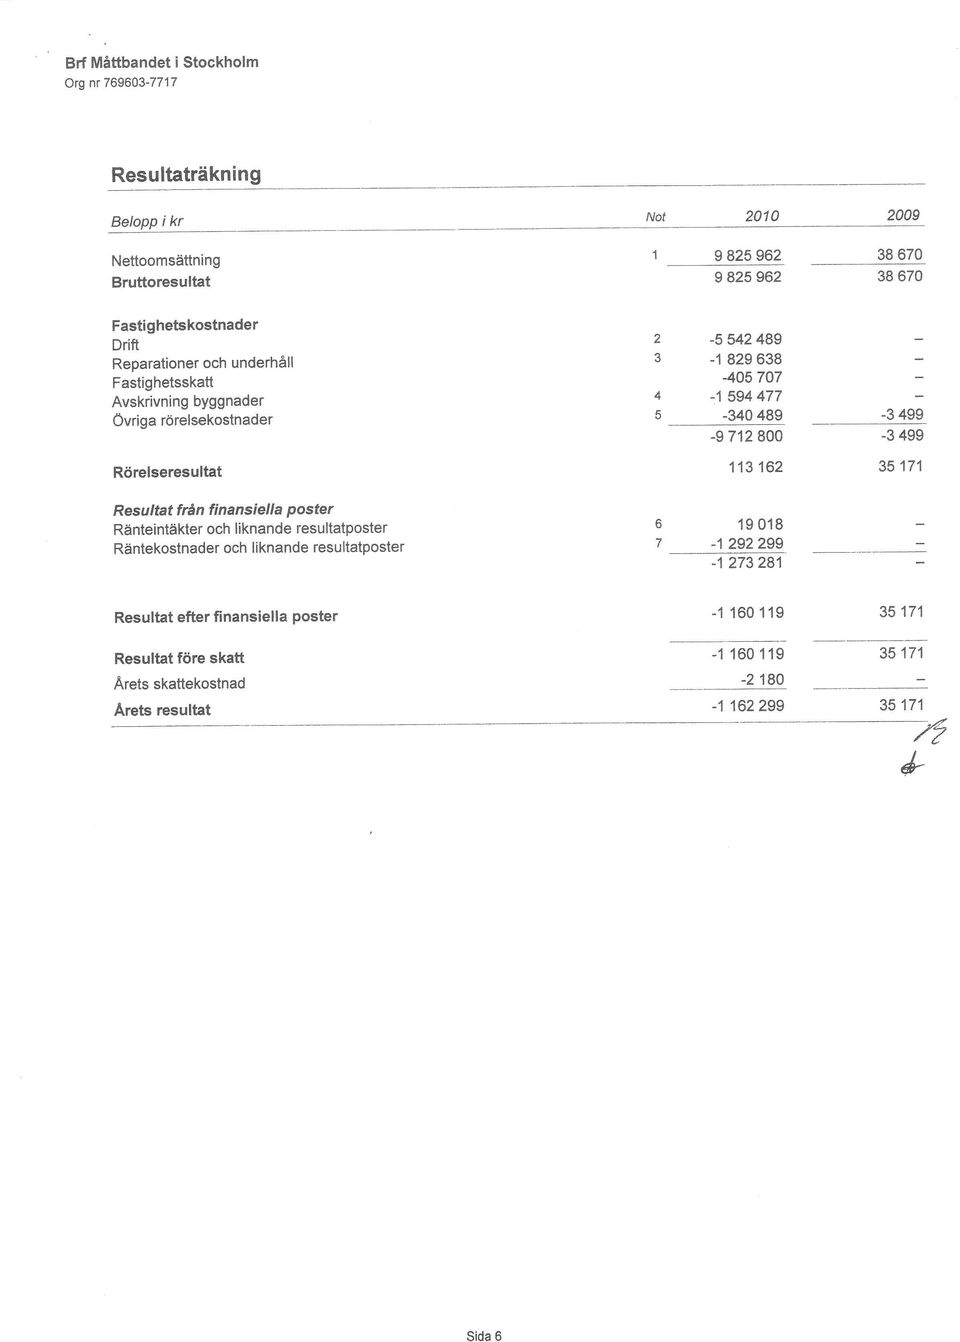 Rörelseresultat 113 162 35 171 Resultat från finansiella Poster Ränteintäkter och liknande resultatposter Räntekostnader och liknande resultatposter 19